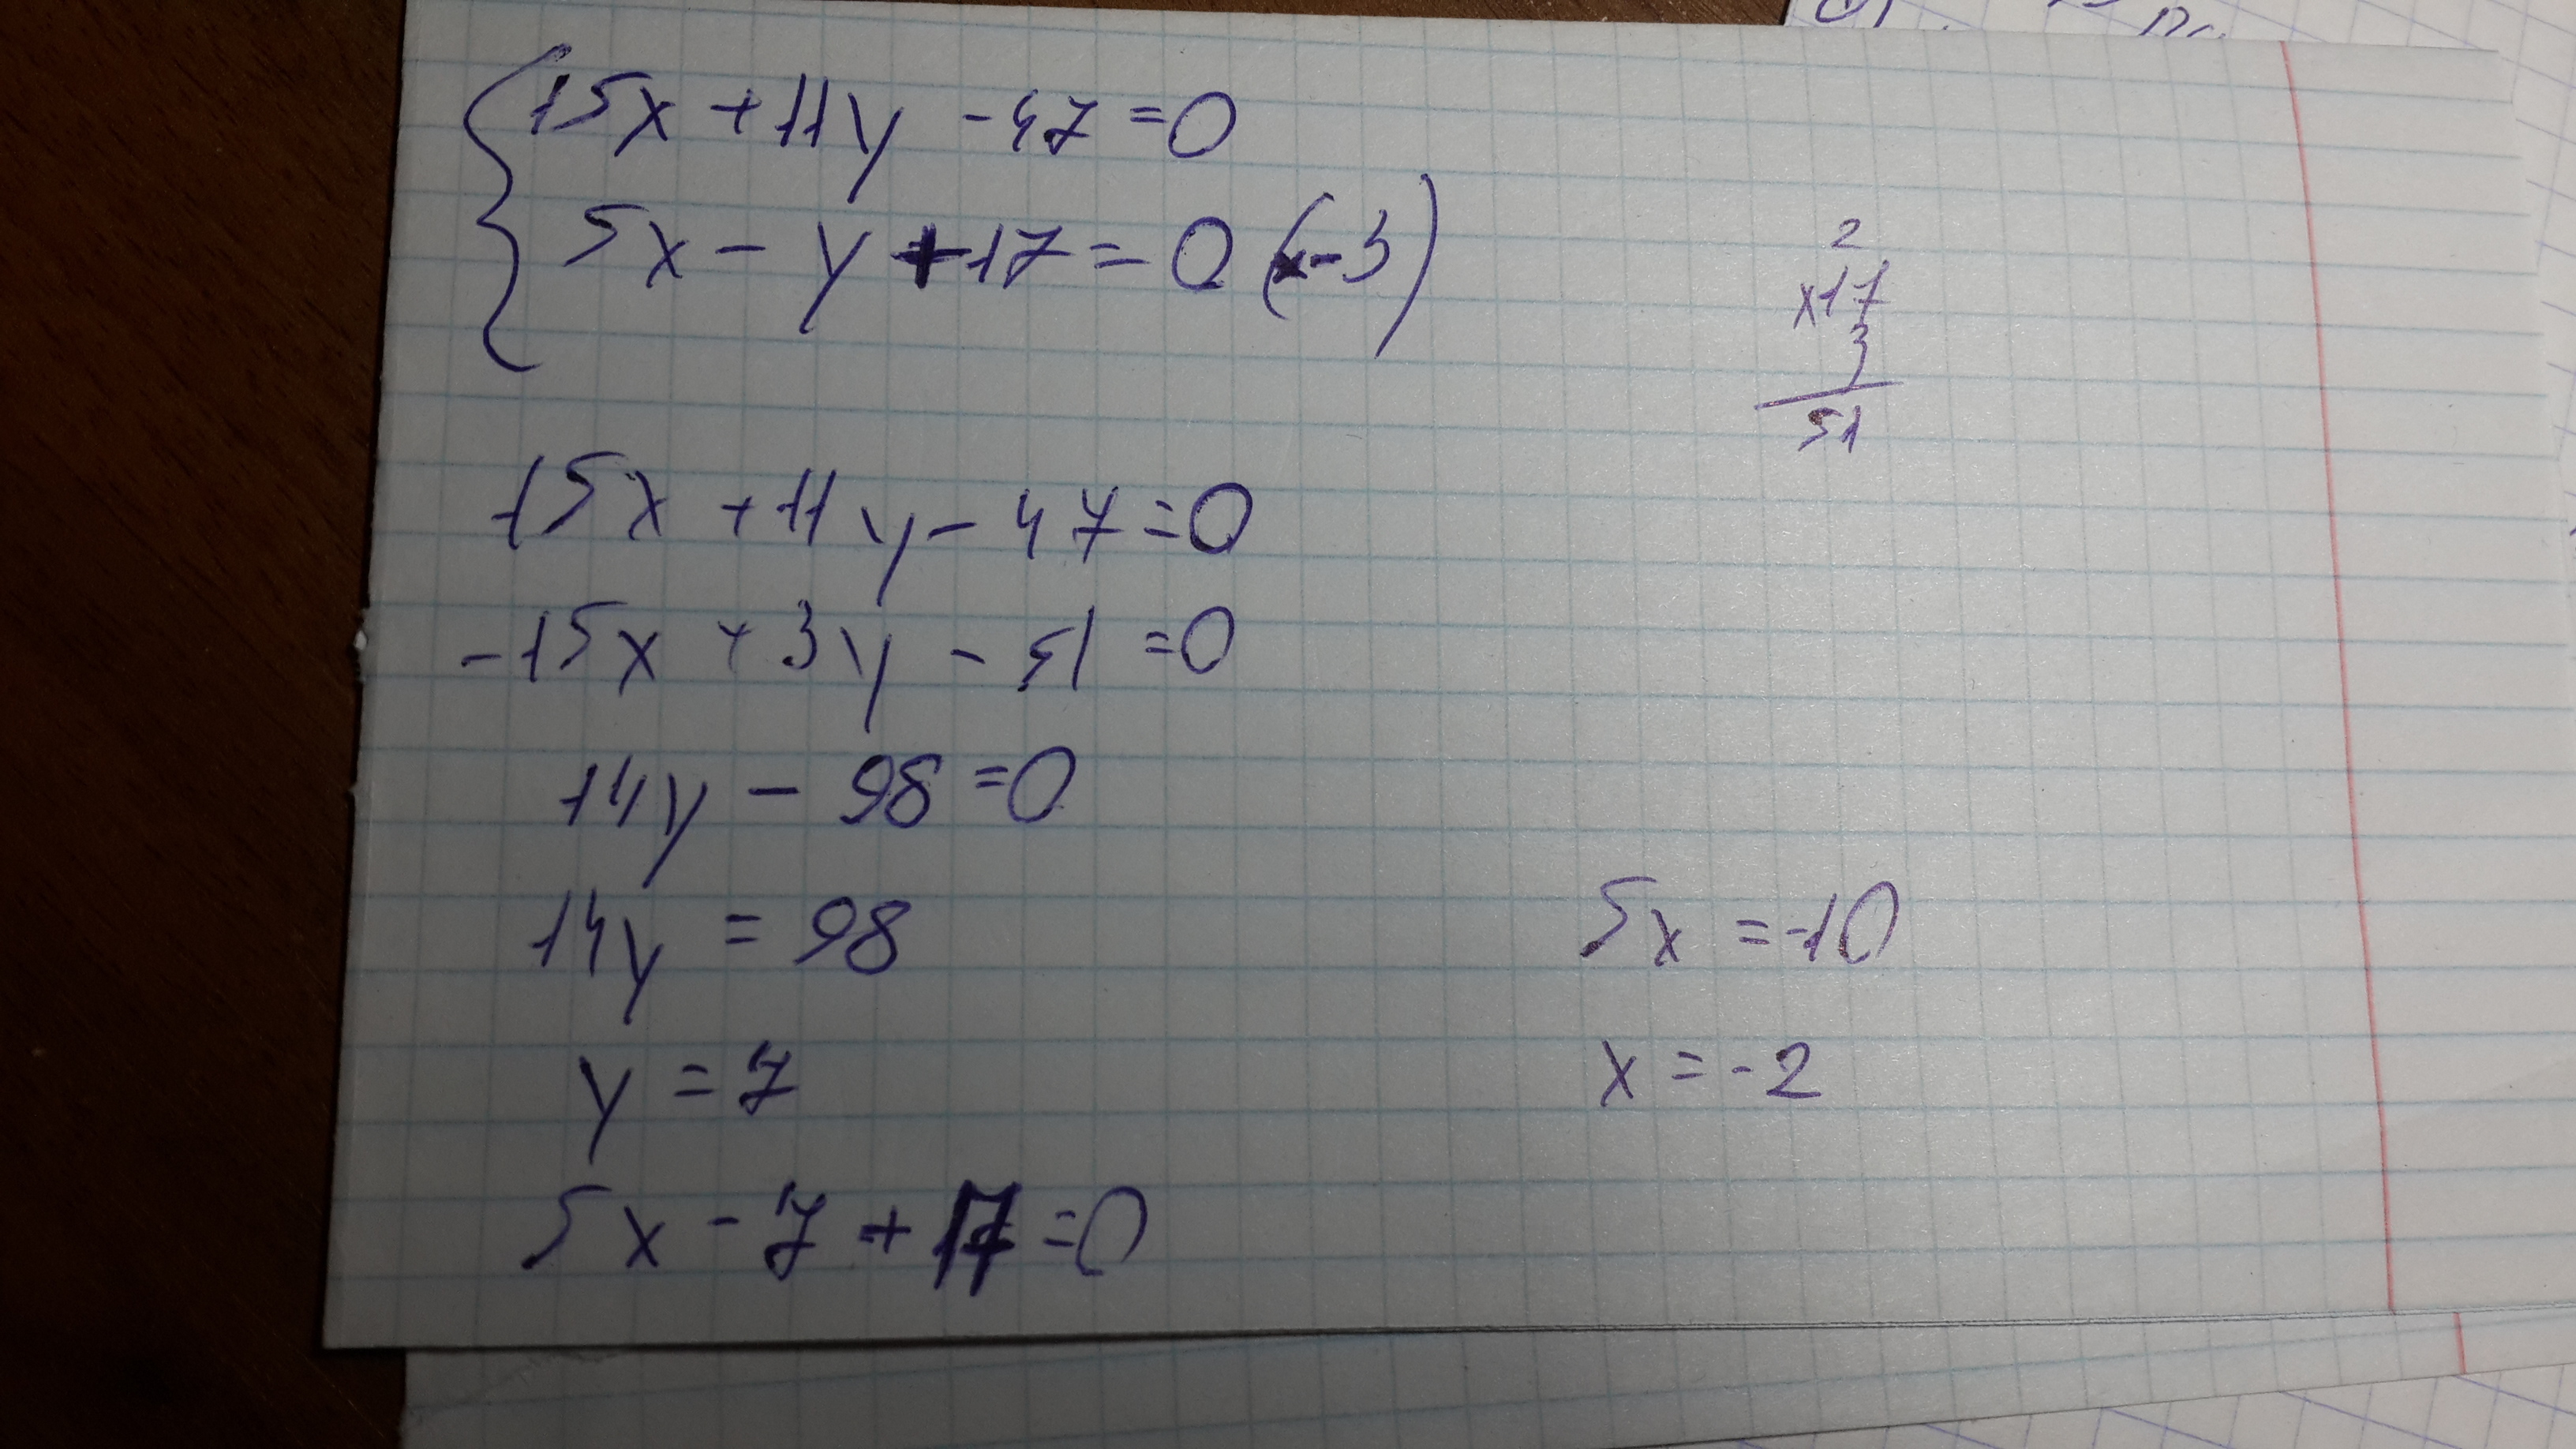 15x+11y-47=0 5x-y+17=0 Это система помогите решить С решением пожалуйста БА...